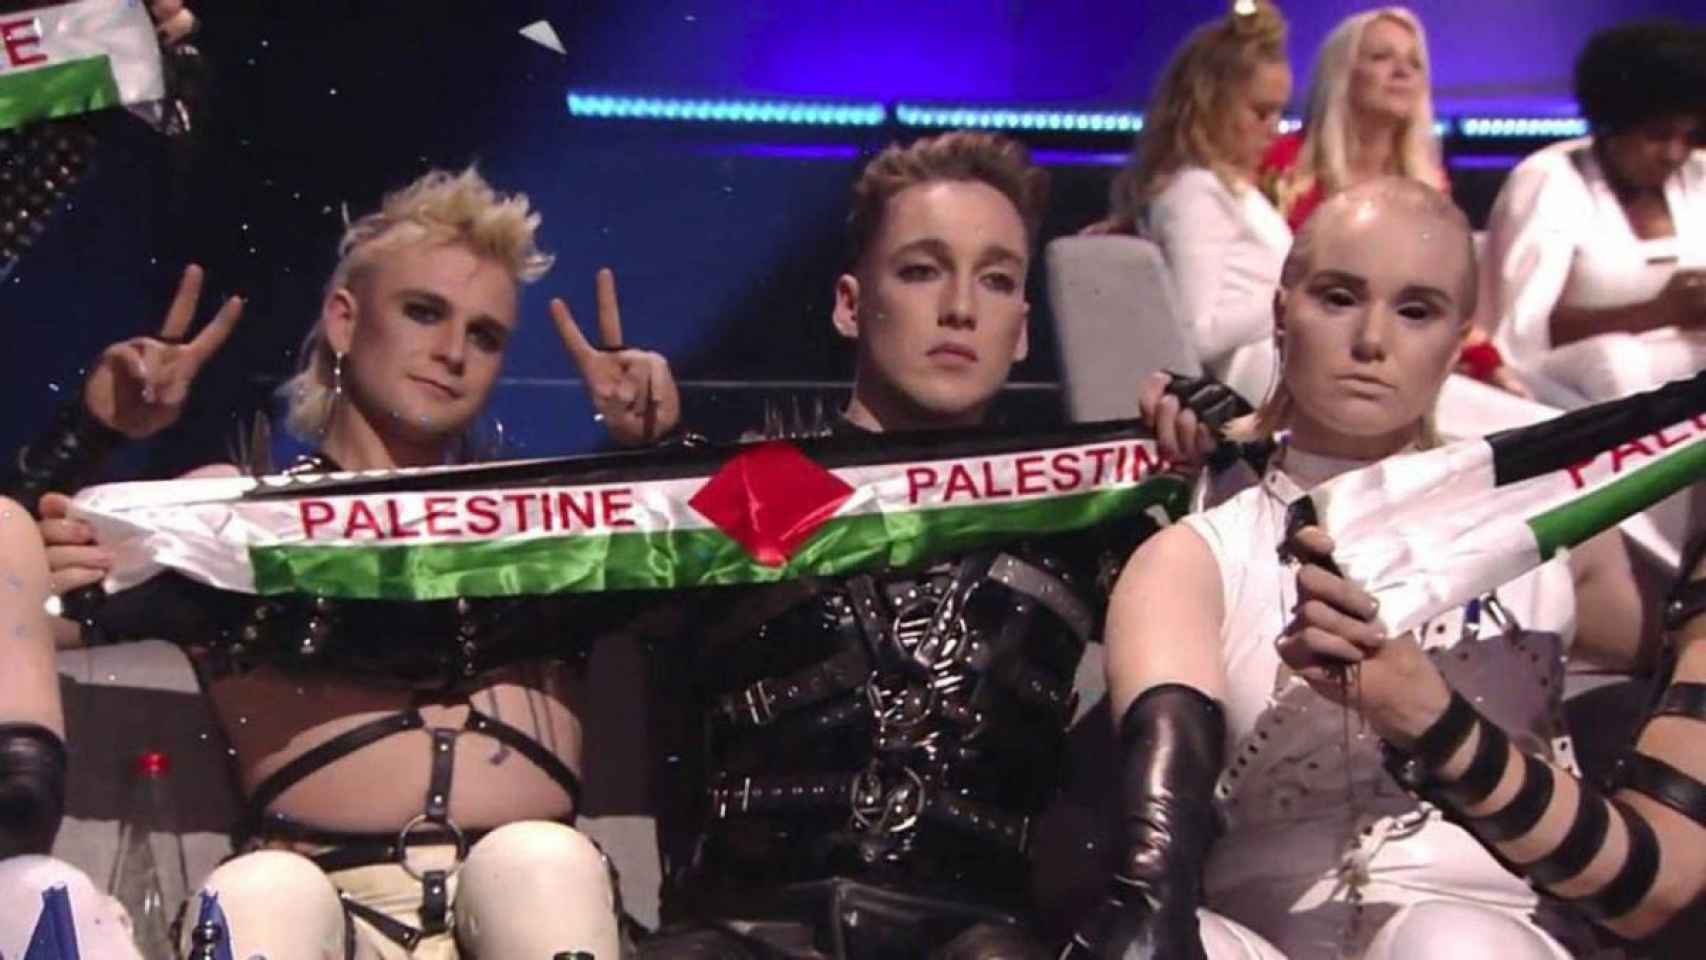 El grupo islandés Hatari mostró banderas palestinas en Eurovisión 2019.